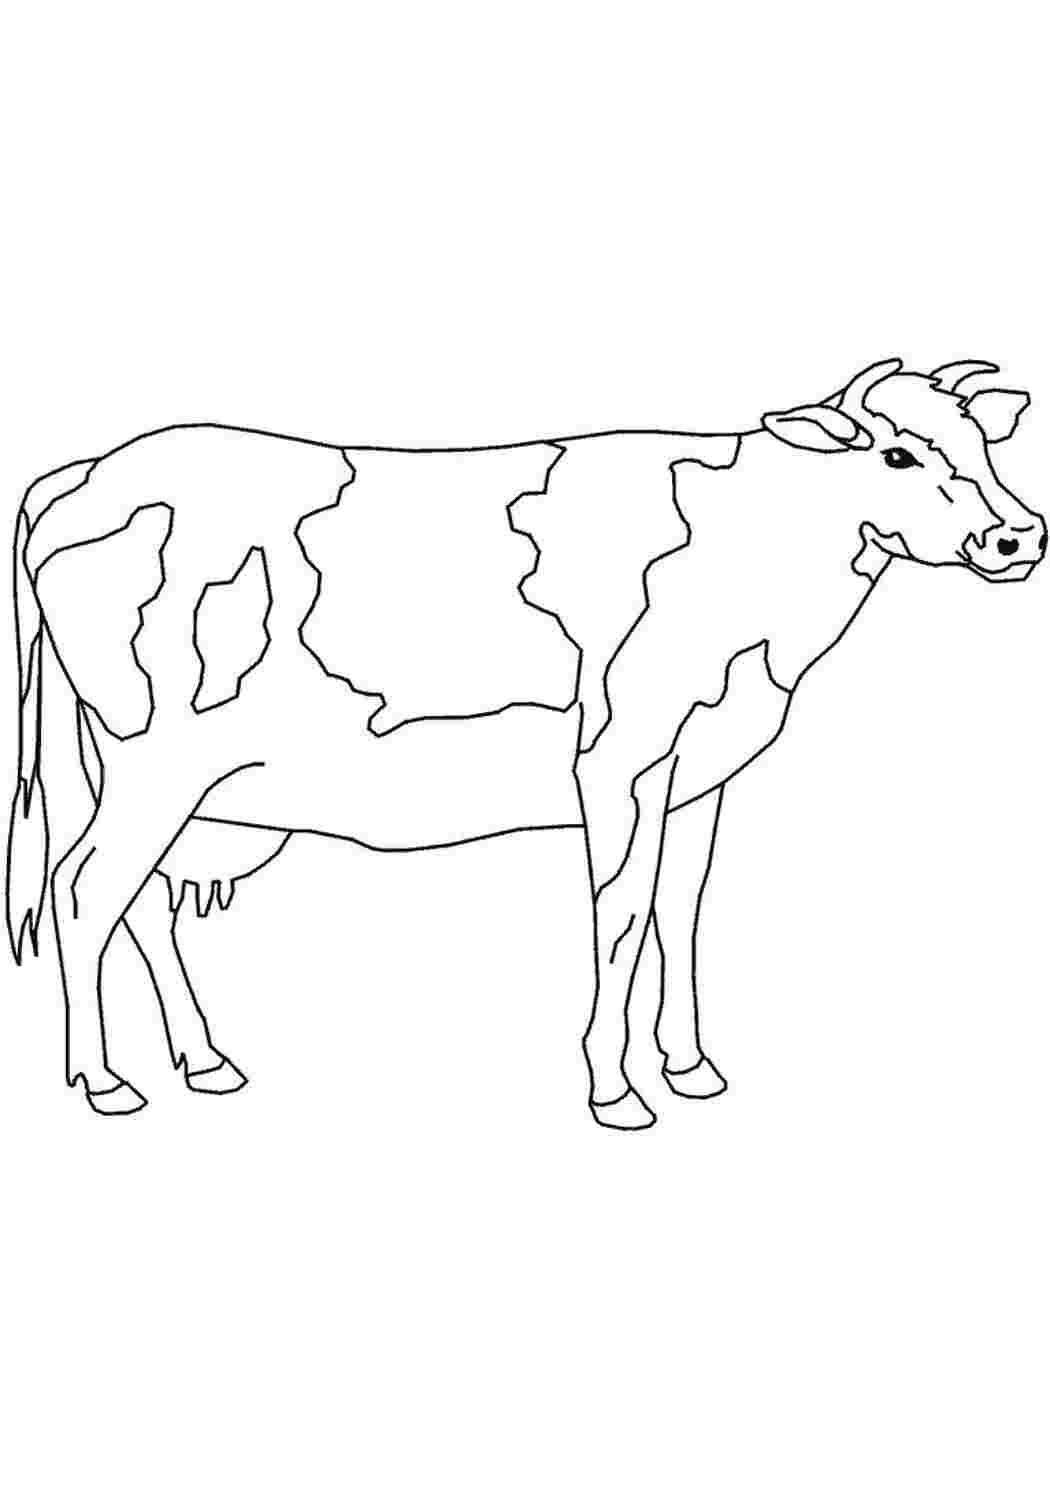 как нарисовать корову - 5569027